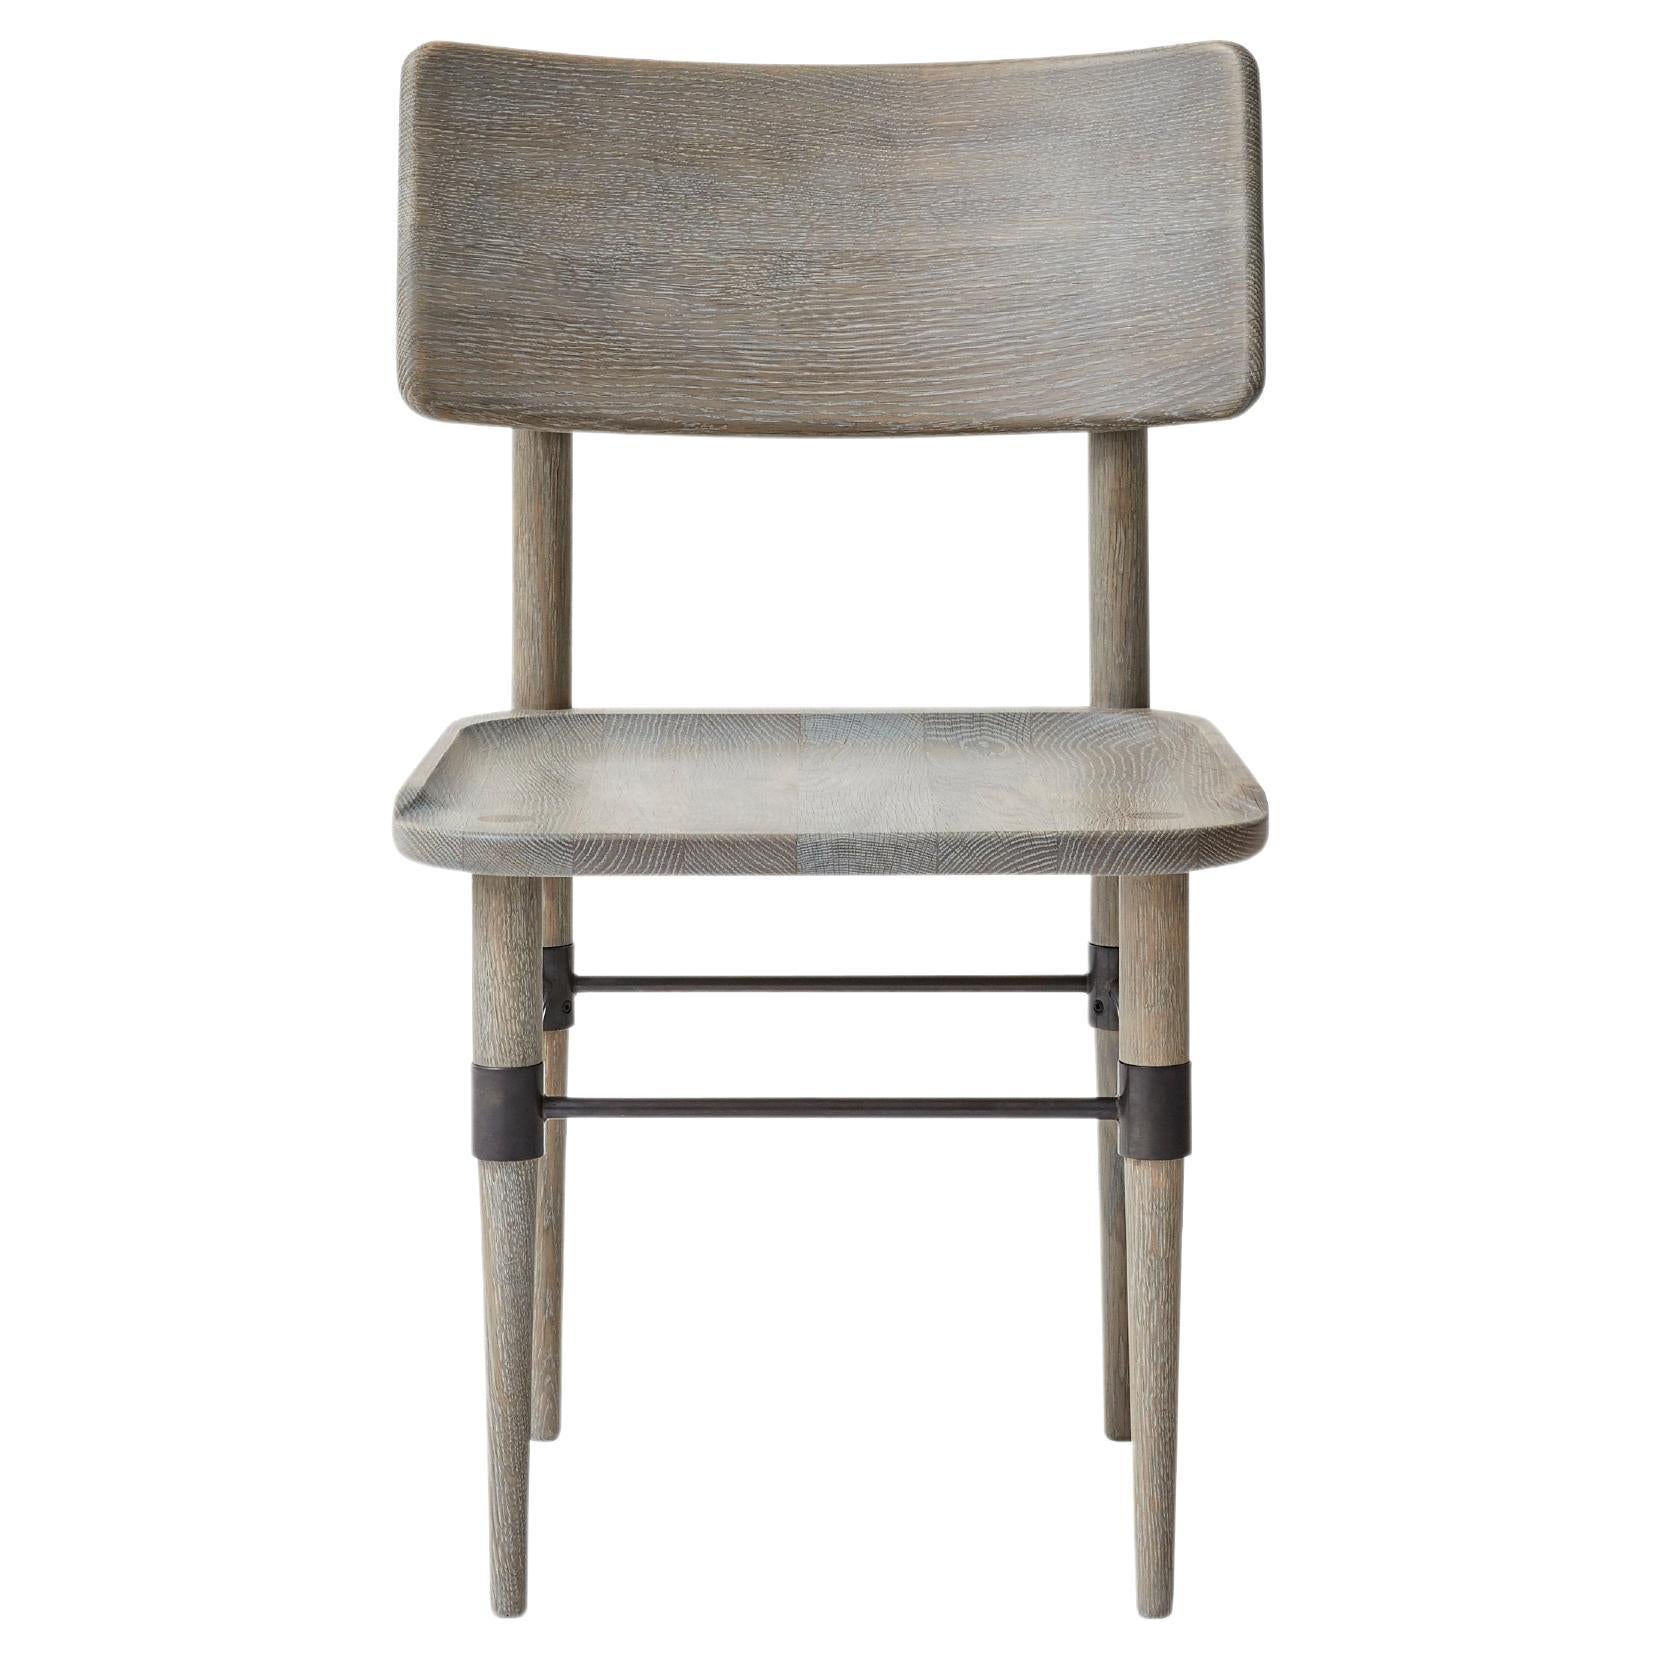 MG101 Dining chair in grey oak by Malte Gormsen Design by Space Copenhagen For Sale